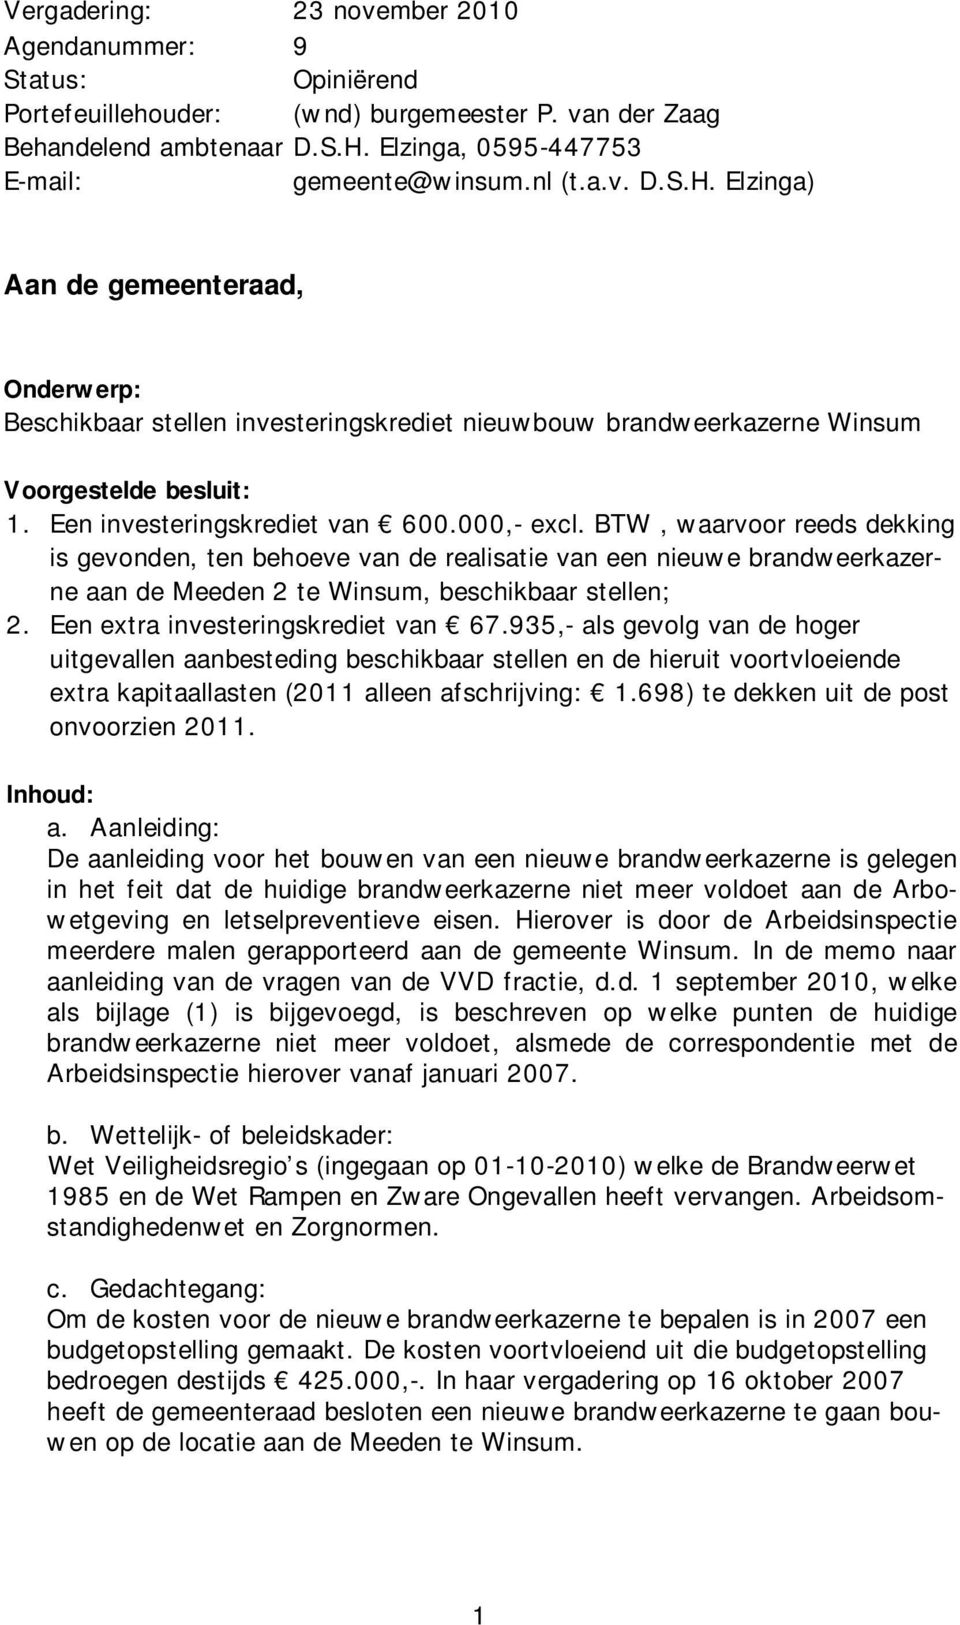 BTW, waarvoor reeds dekking is gevonden, ten behoeve van de realisatie van een nieuwe brandweerkazerne aan de Meeden 2 te Winsum, beschikbaar stellen; 2. Een extra investeringskrediet van 67.